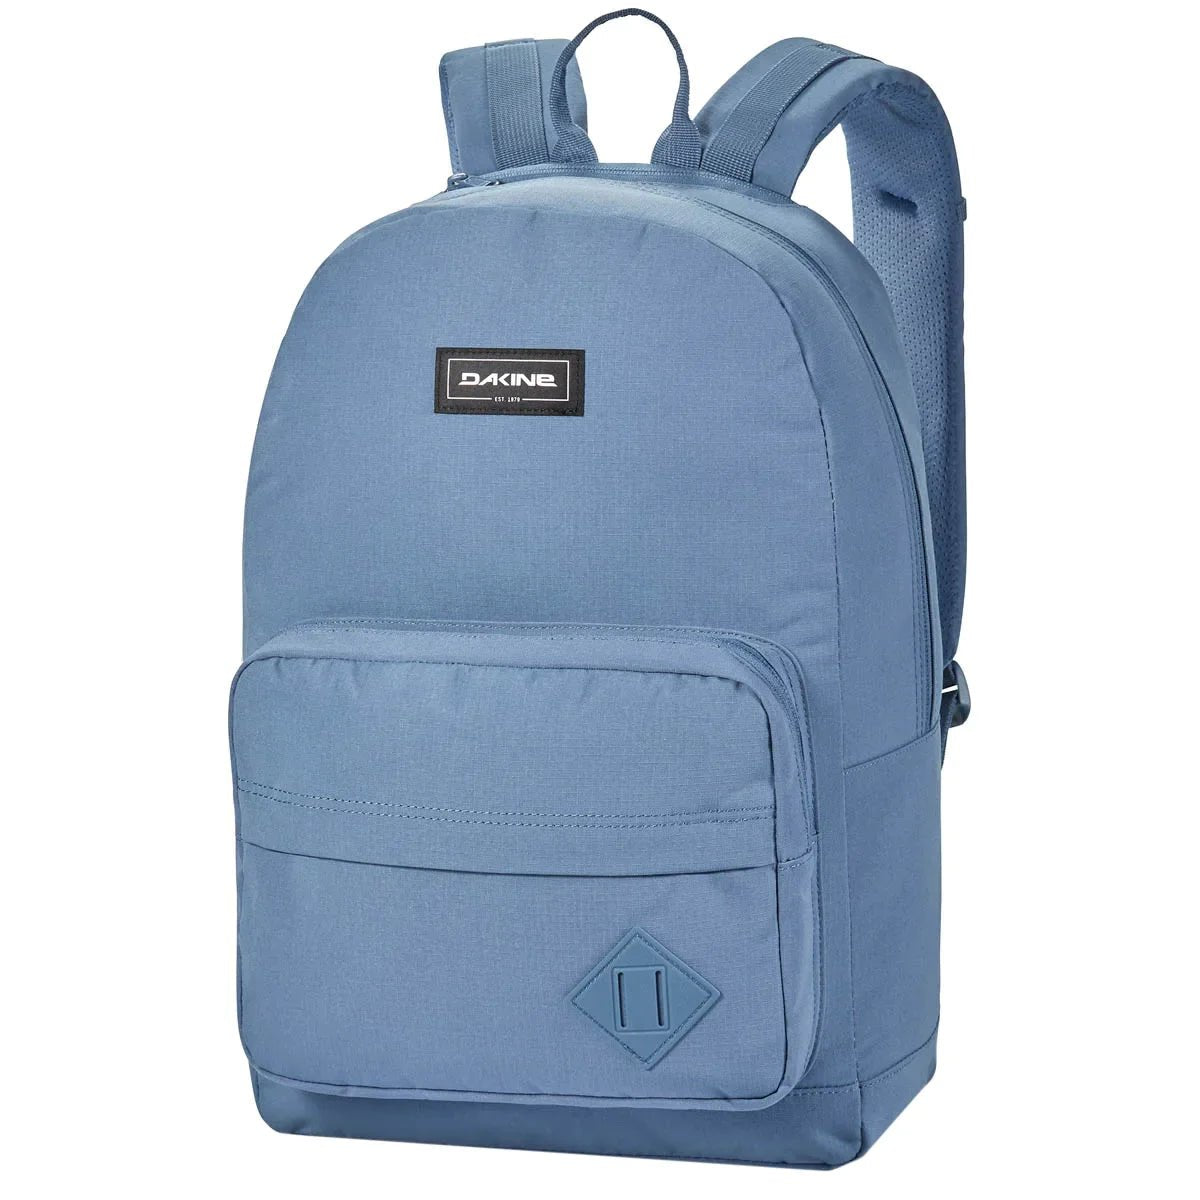 Dakine Packs & Bags 365 Pack Backpack 46 cm - vintage blue